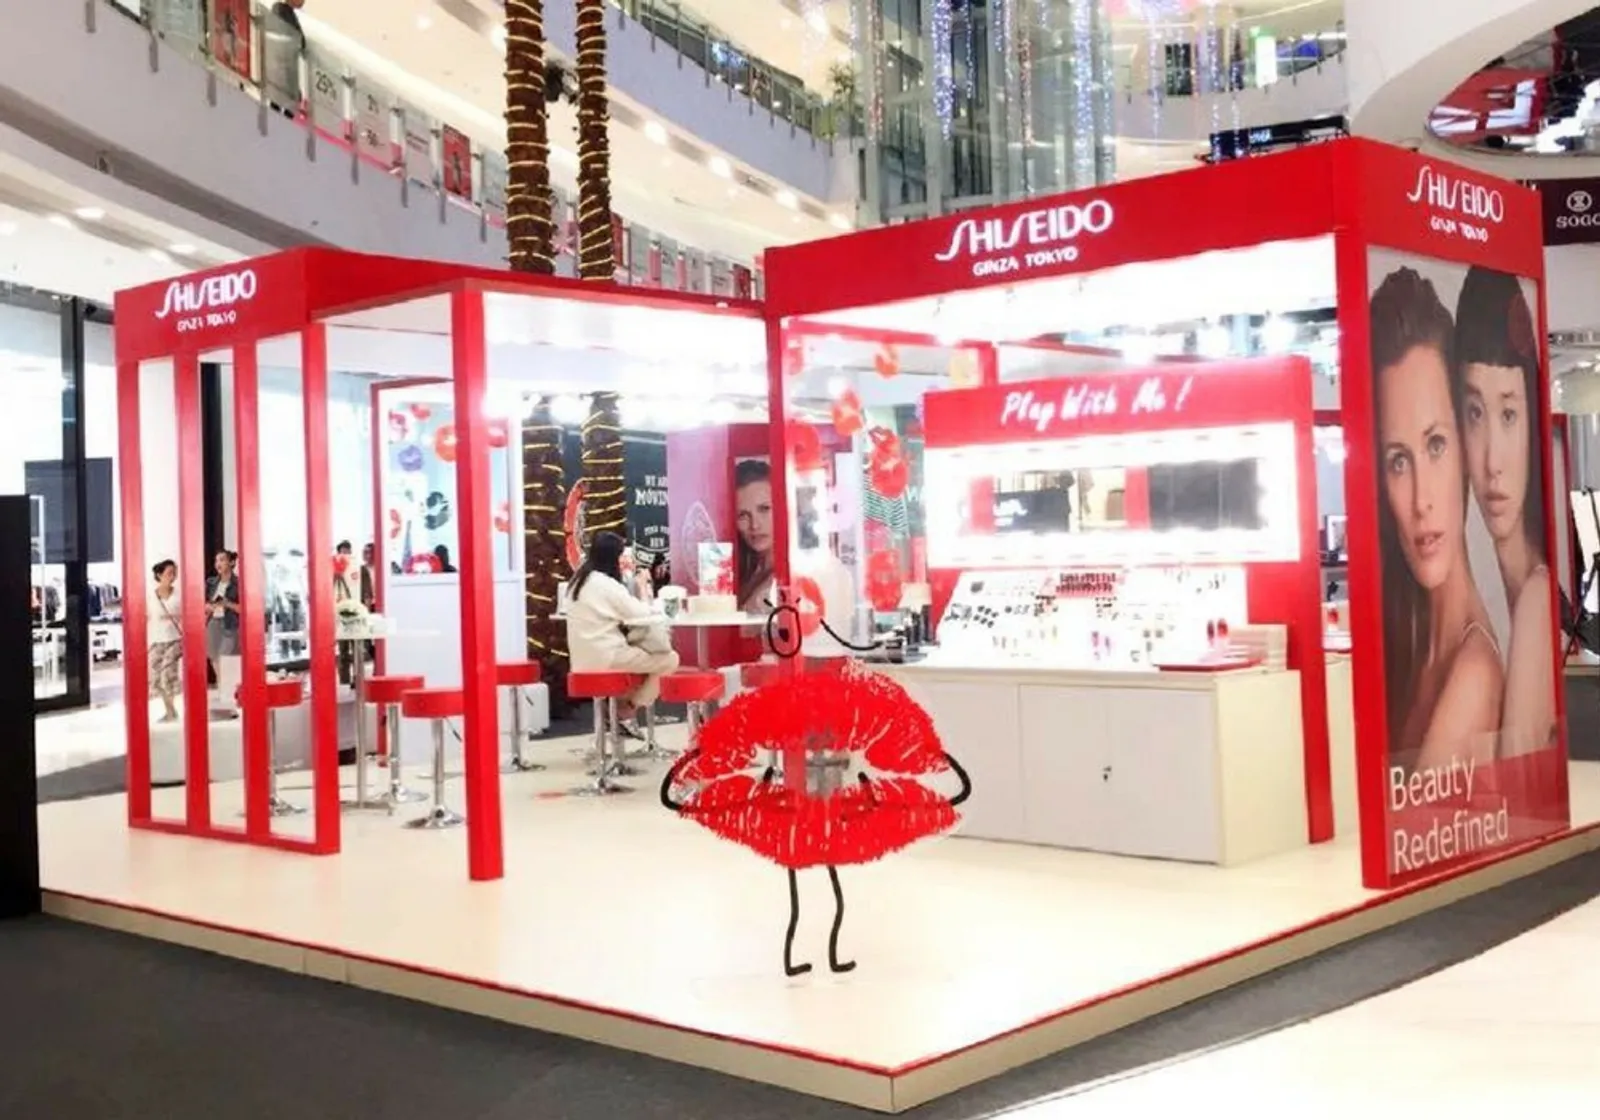 5 Pengalaman Seru Di Pop Up Event Shiseido